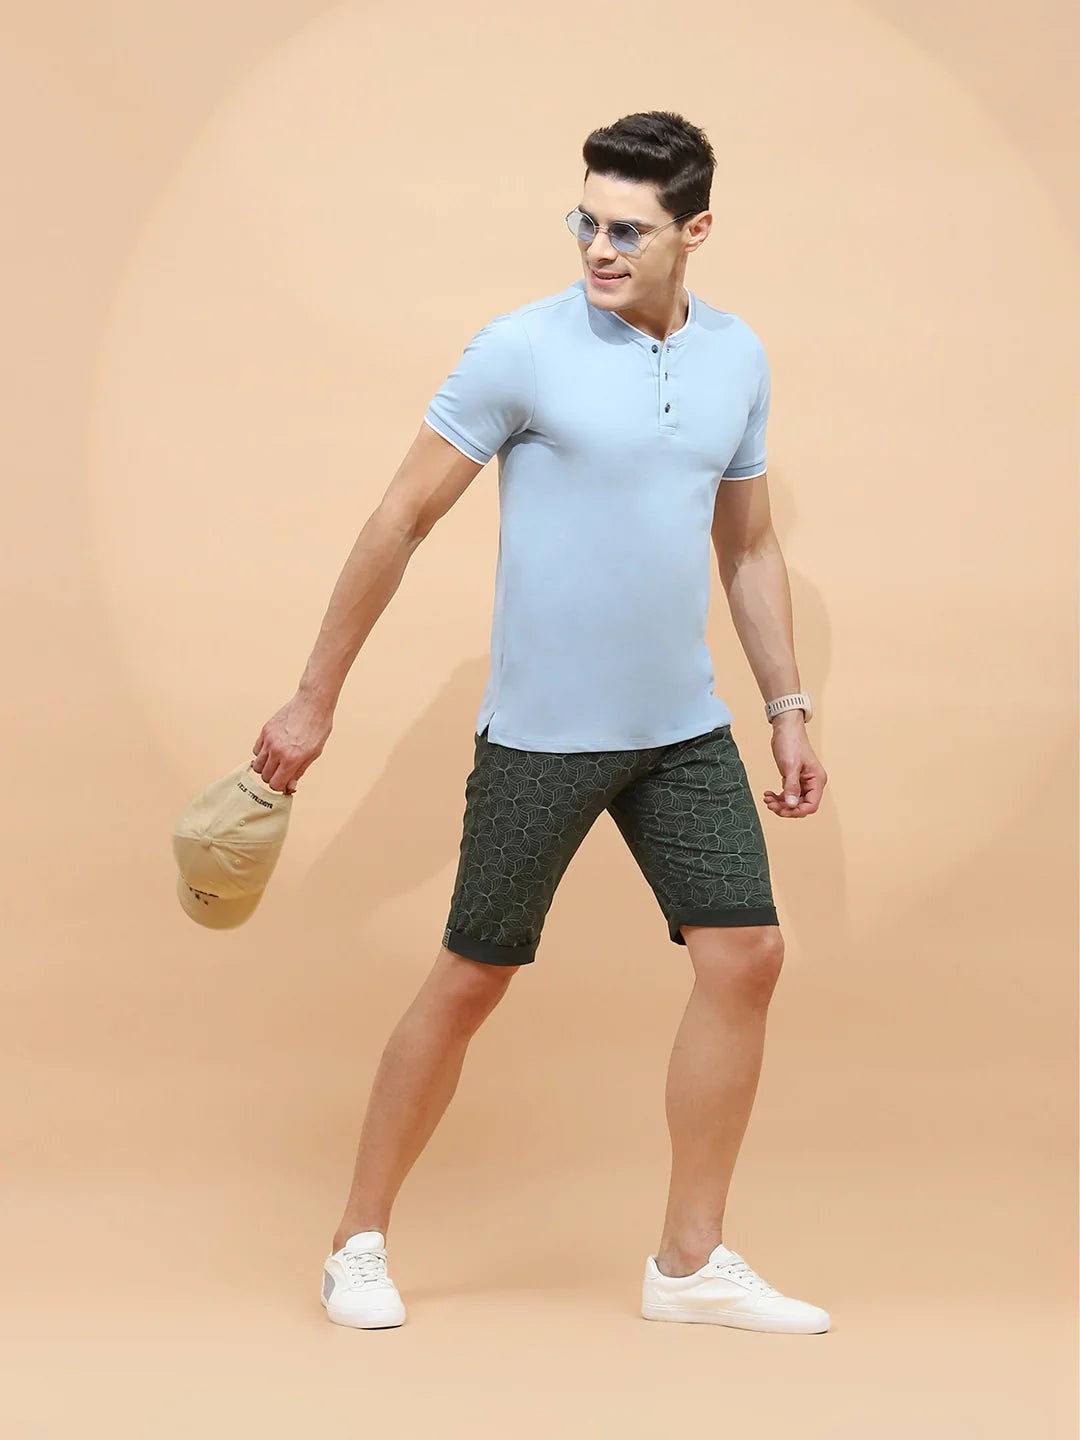 Olive Print Cotton Blend Regular Fit Shorts For Men